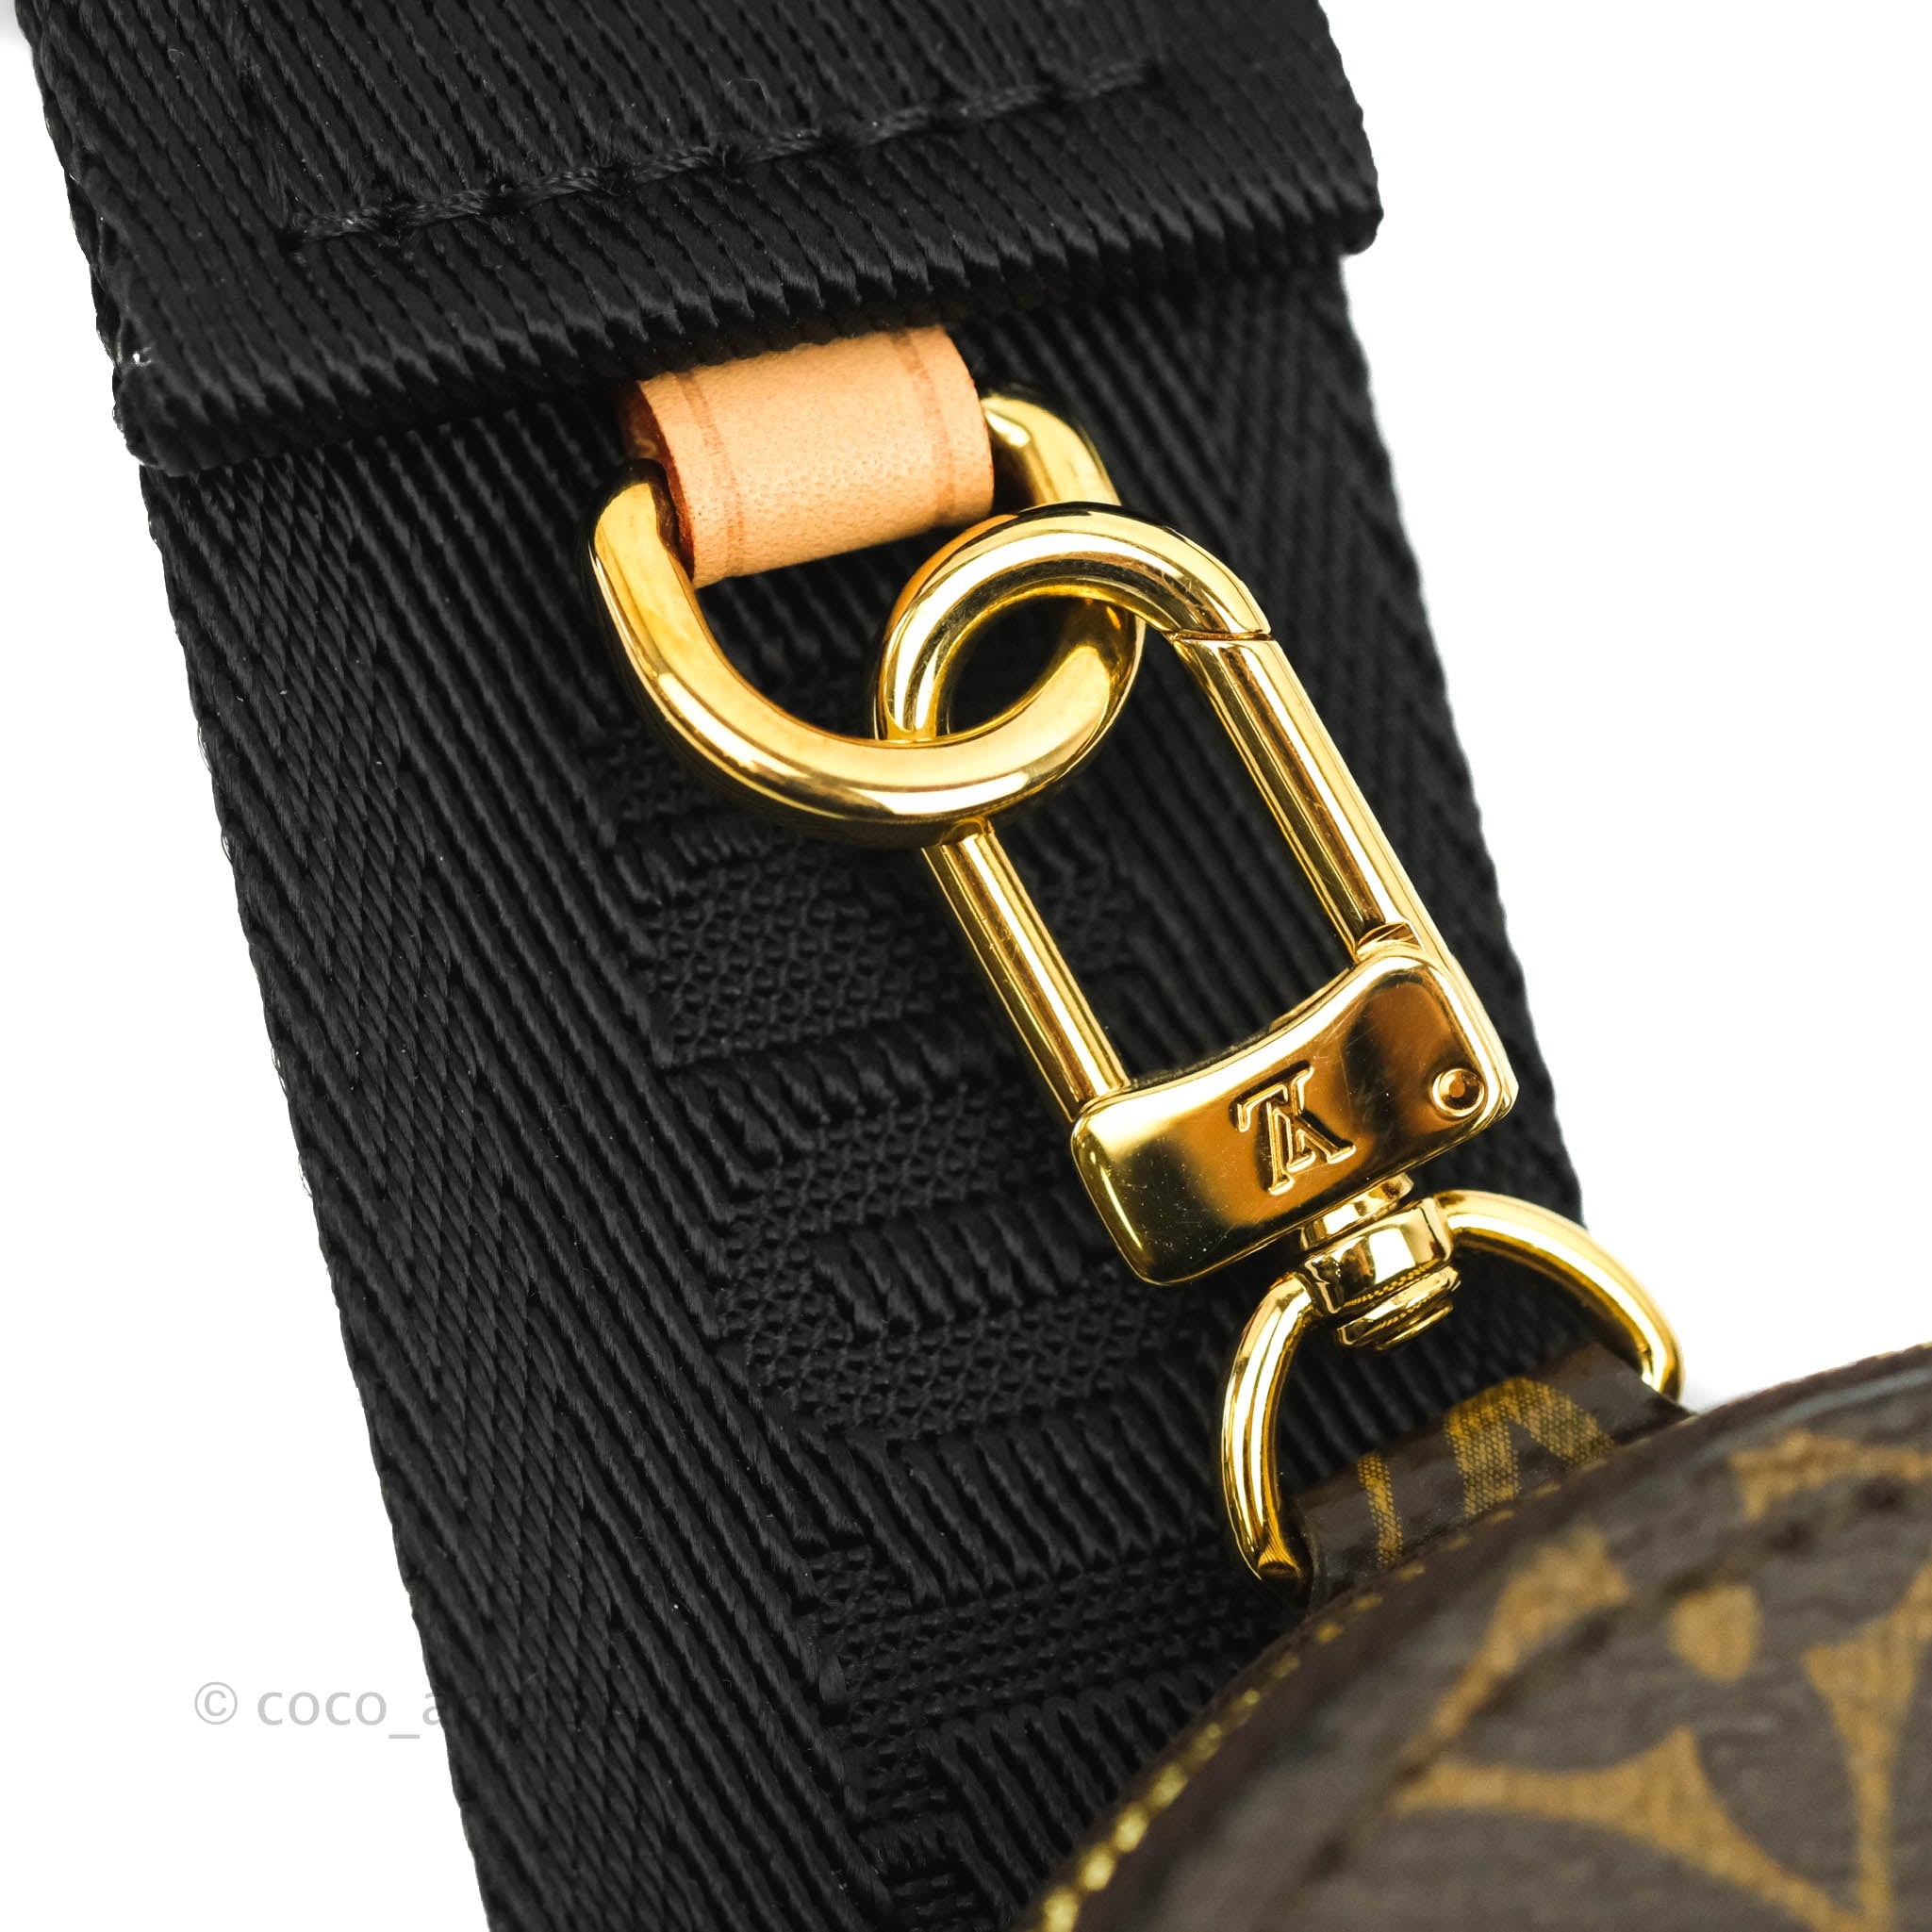 Louis Vuitton Bandouliere Strap Black Monogram